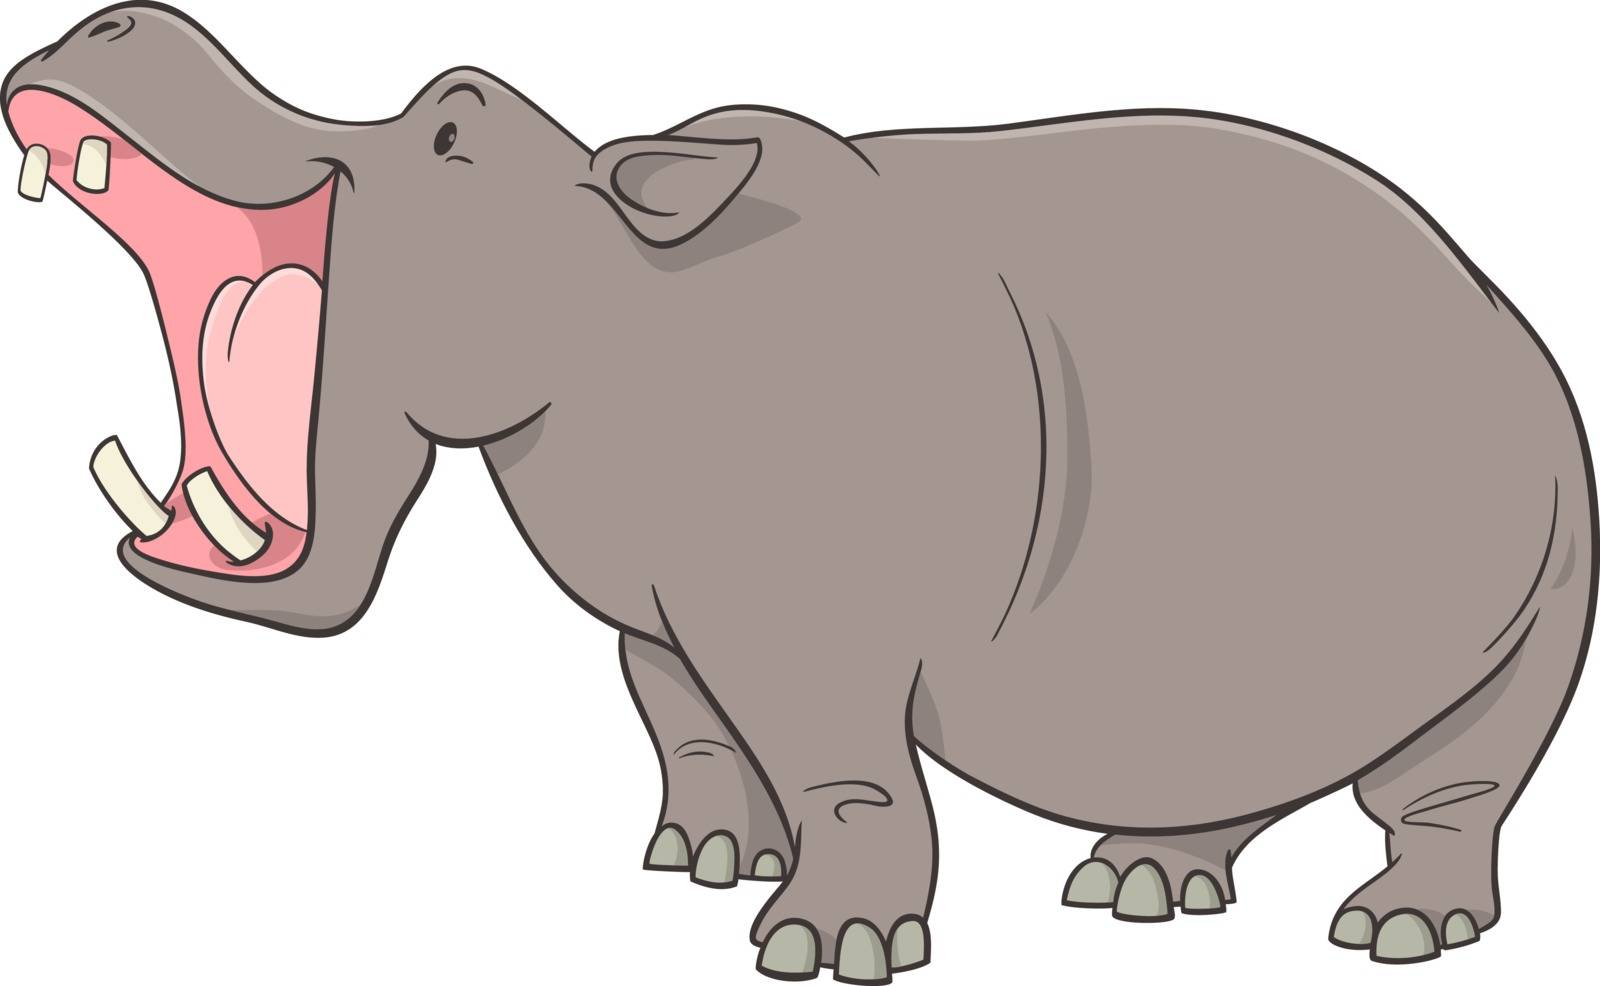 Cartoon Illustration of Hippopotamus Wild Animal Character